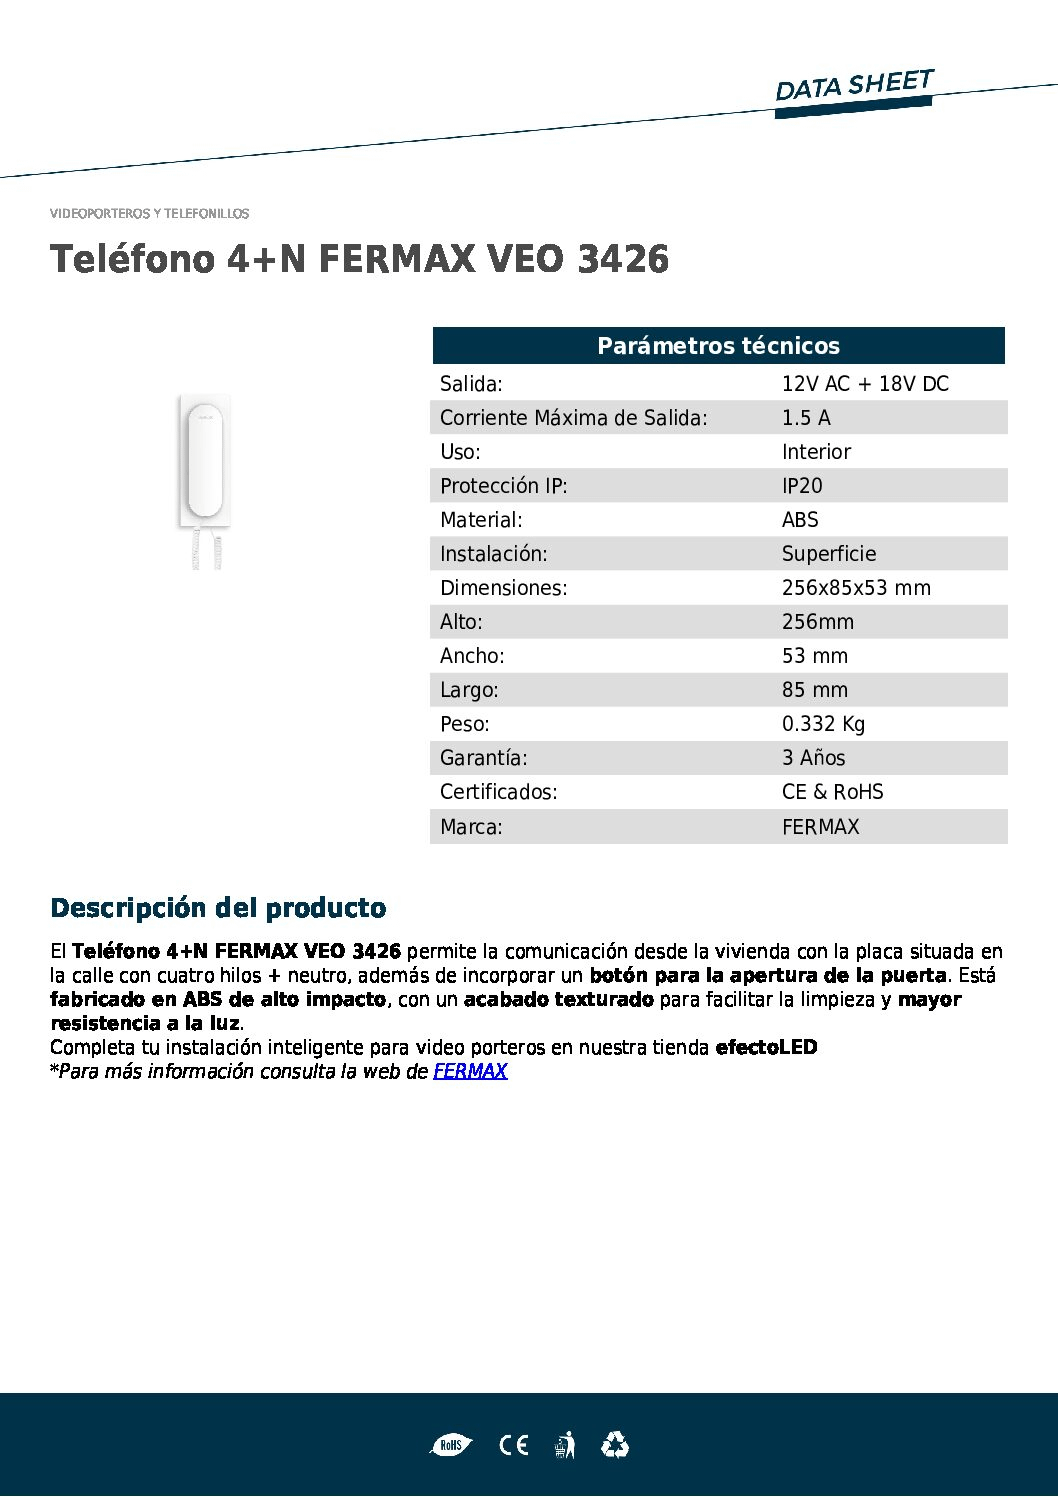 FERMAX 3426 Telefonillo universal VEO 4+N ¡EN OFERTA!